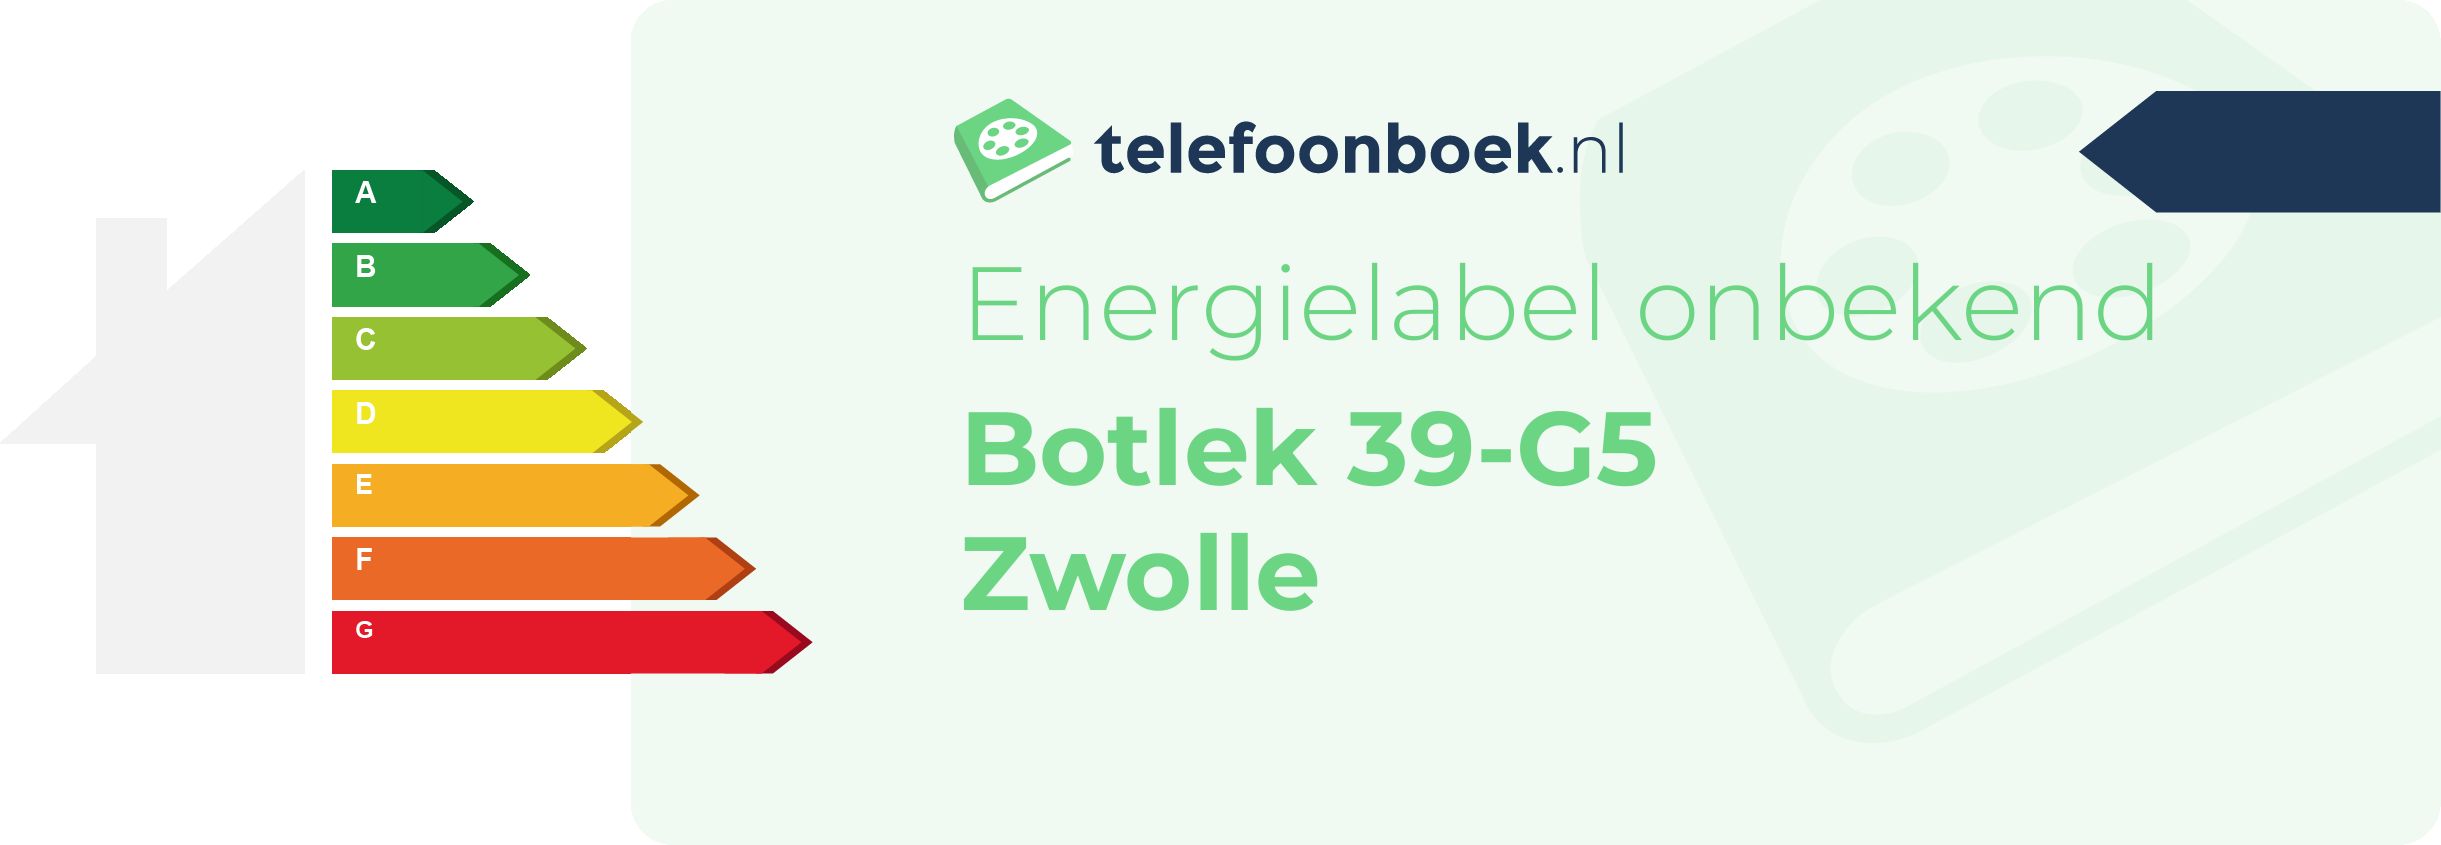 Energielabel Botlek 39-G5 Zwolle